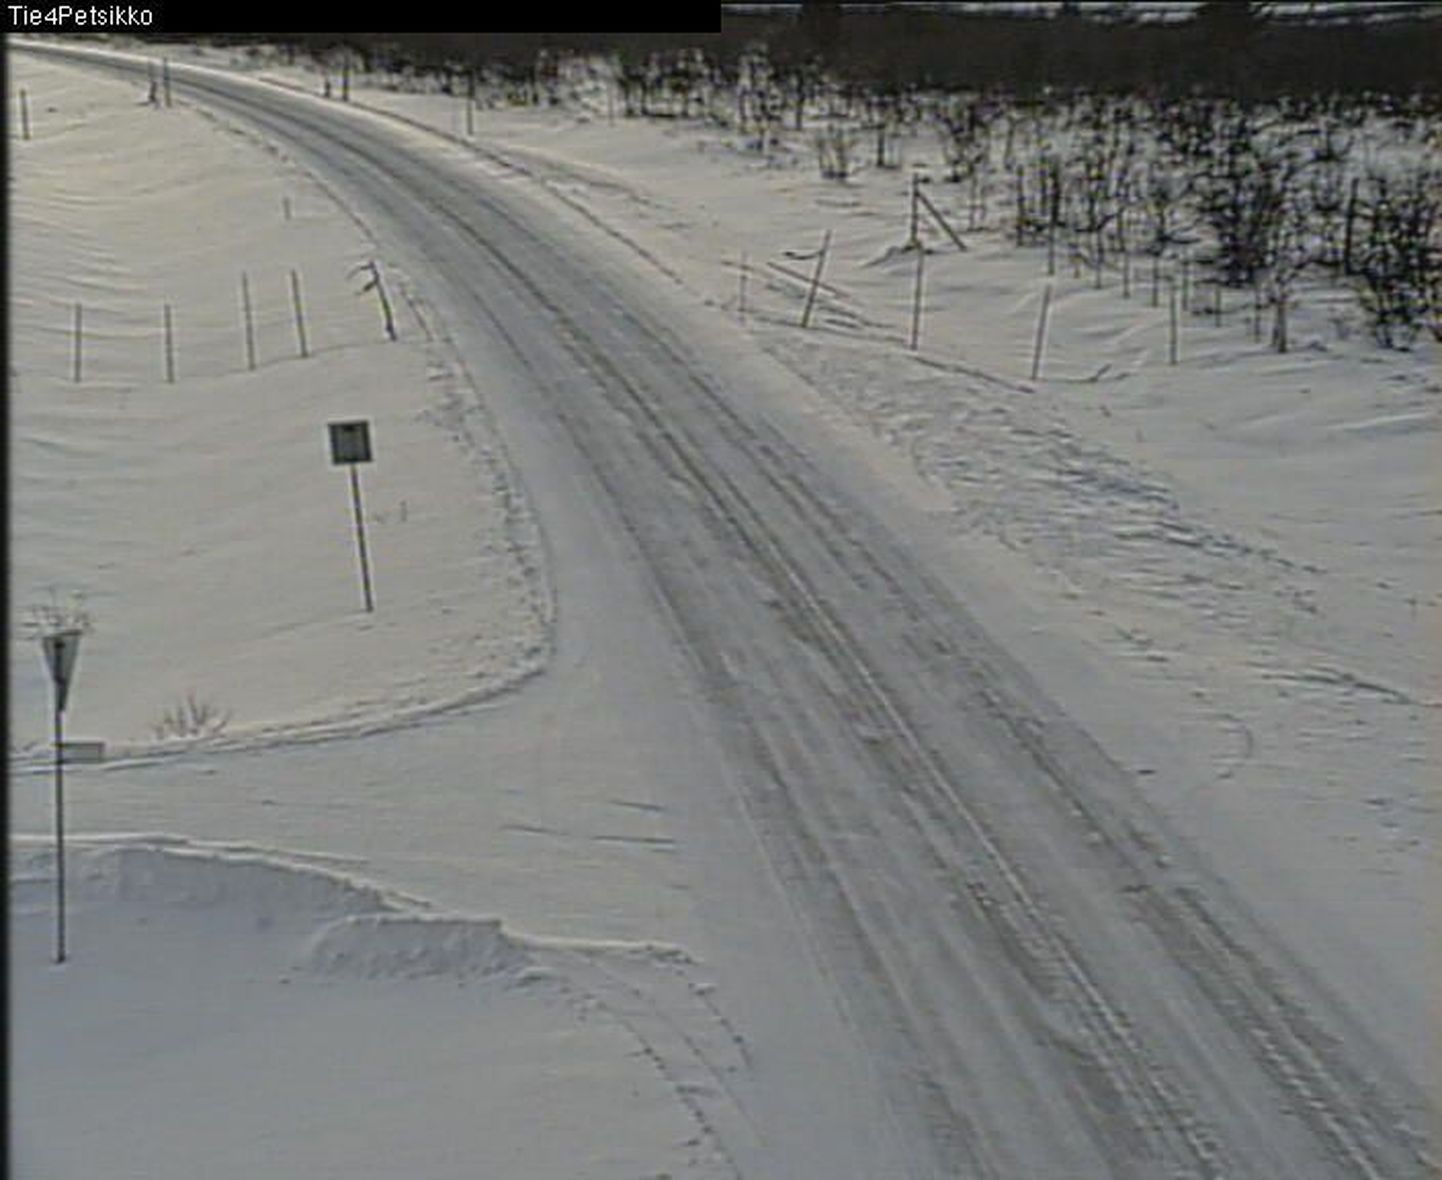 Maanteekaamerast saadud pilt Petsikkolt Rovaniemi suunas viival maanteel nr 4.